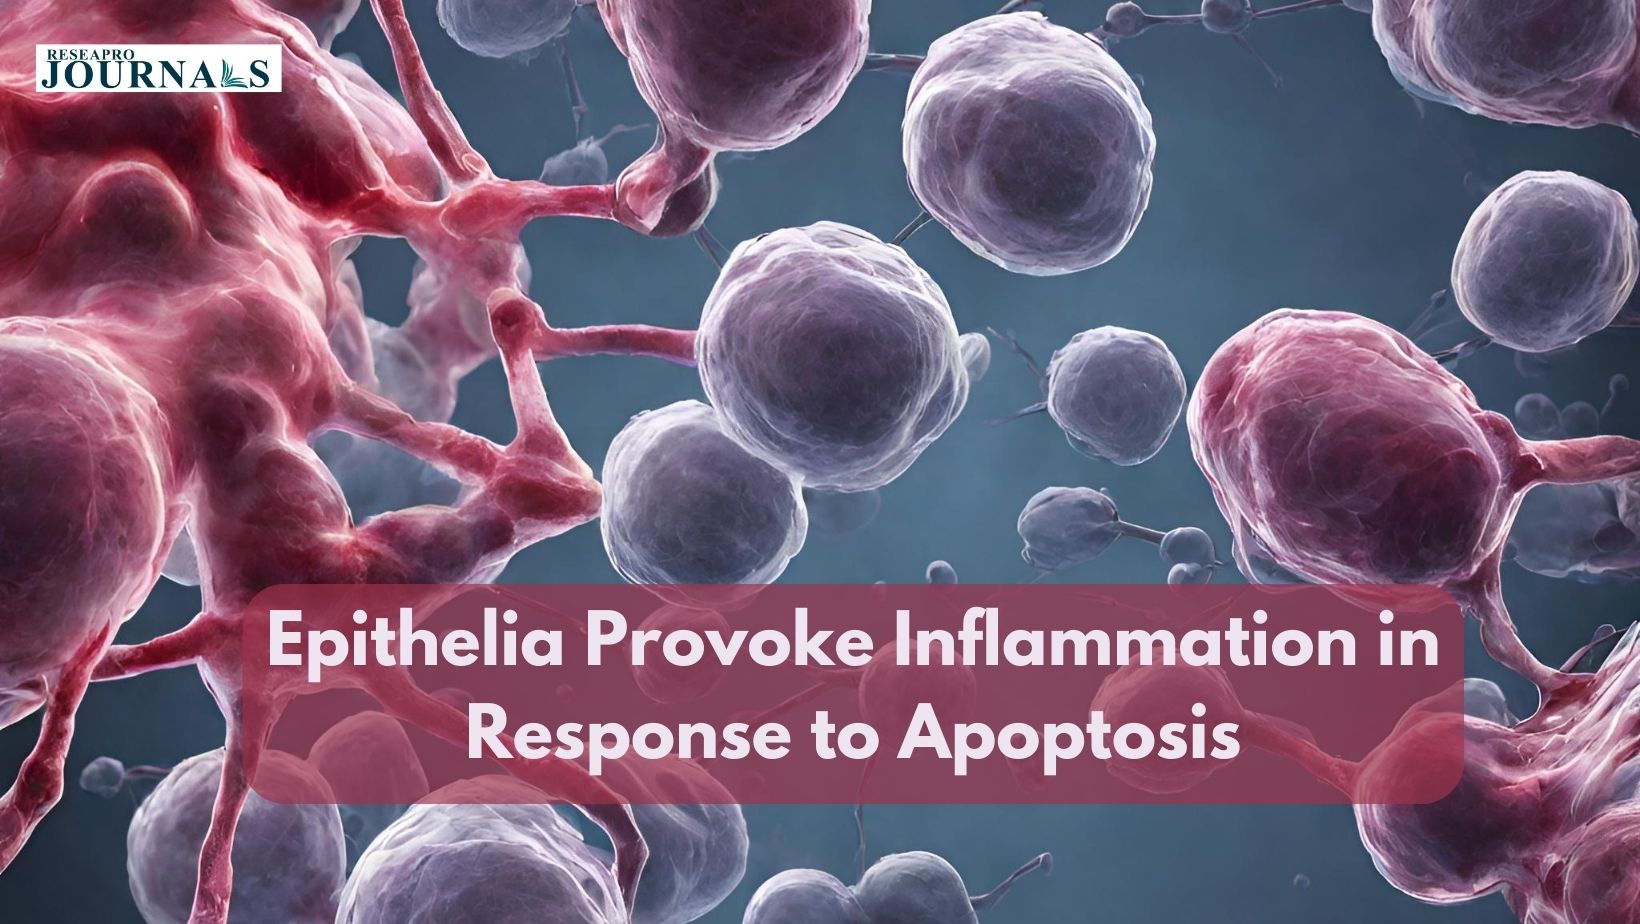 Epithelia Provoke Inflammation in Response to Apoptosis